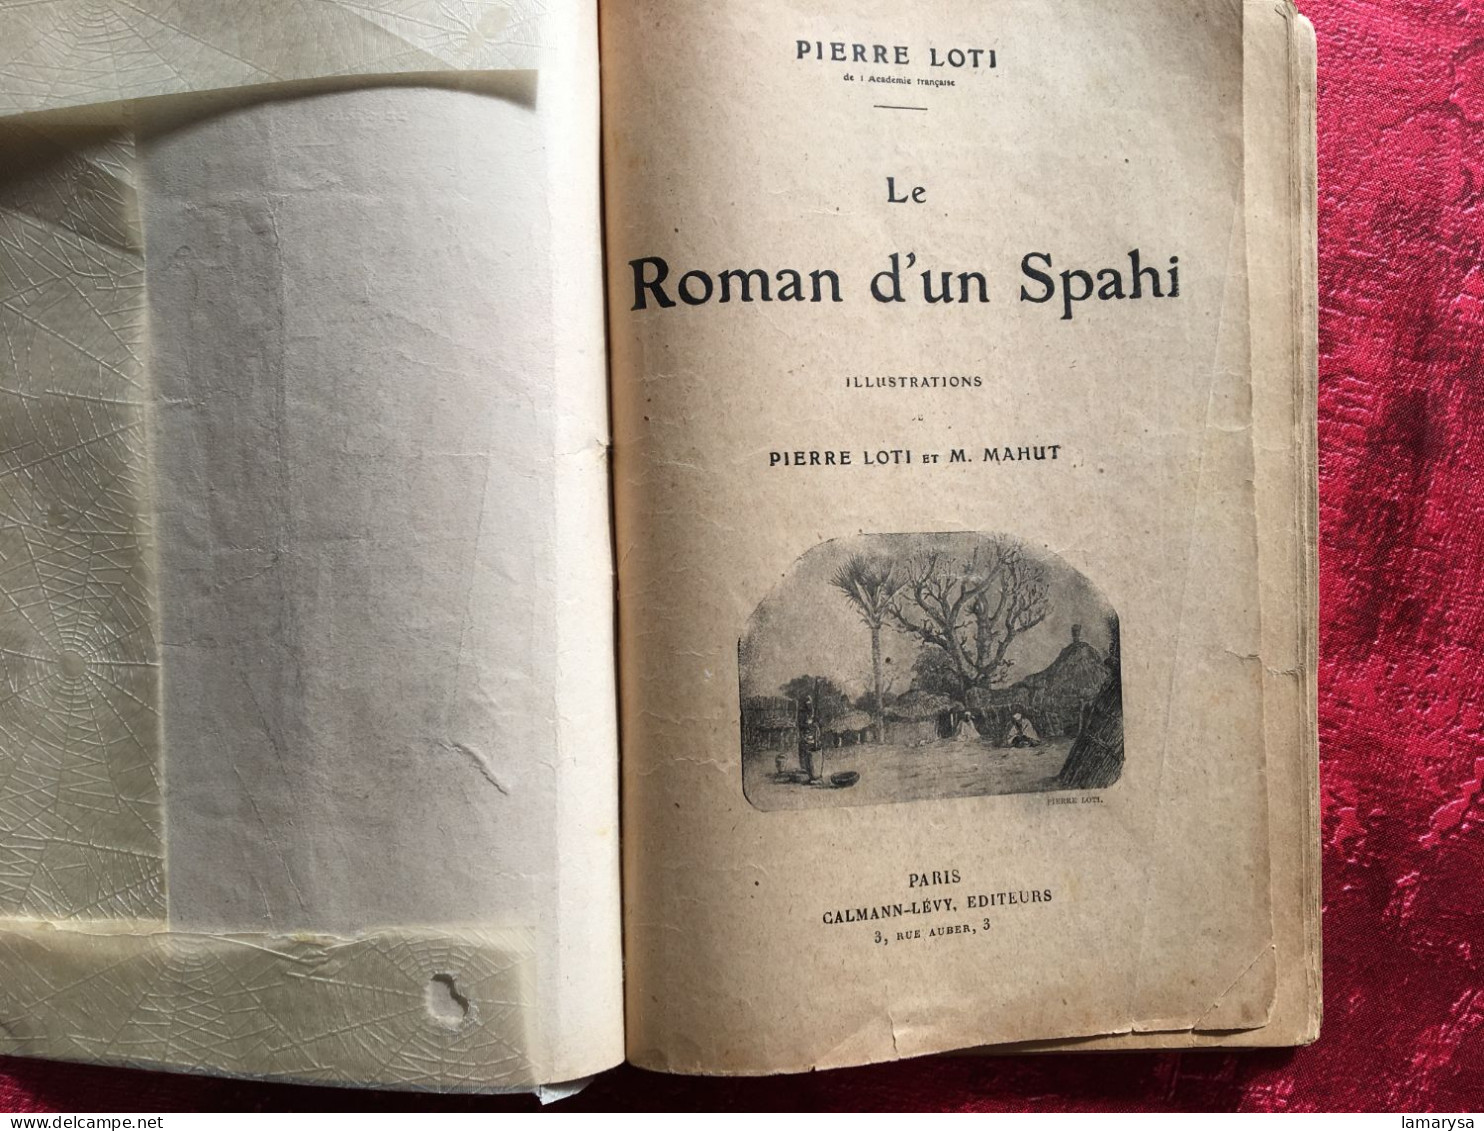 Le Roman D'un Spahi :Pierre Loti Livre Français Romans Aventures-illustrations Loti & M. Mahu,Calmann-Lévy, 1910 Paris, - Aventure